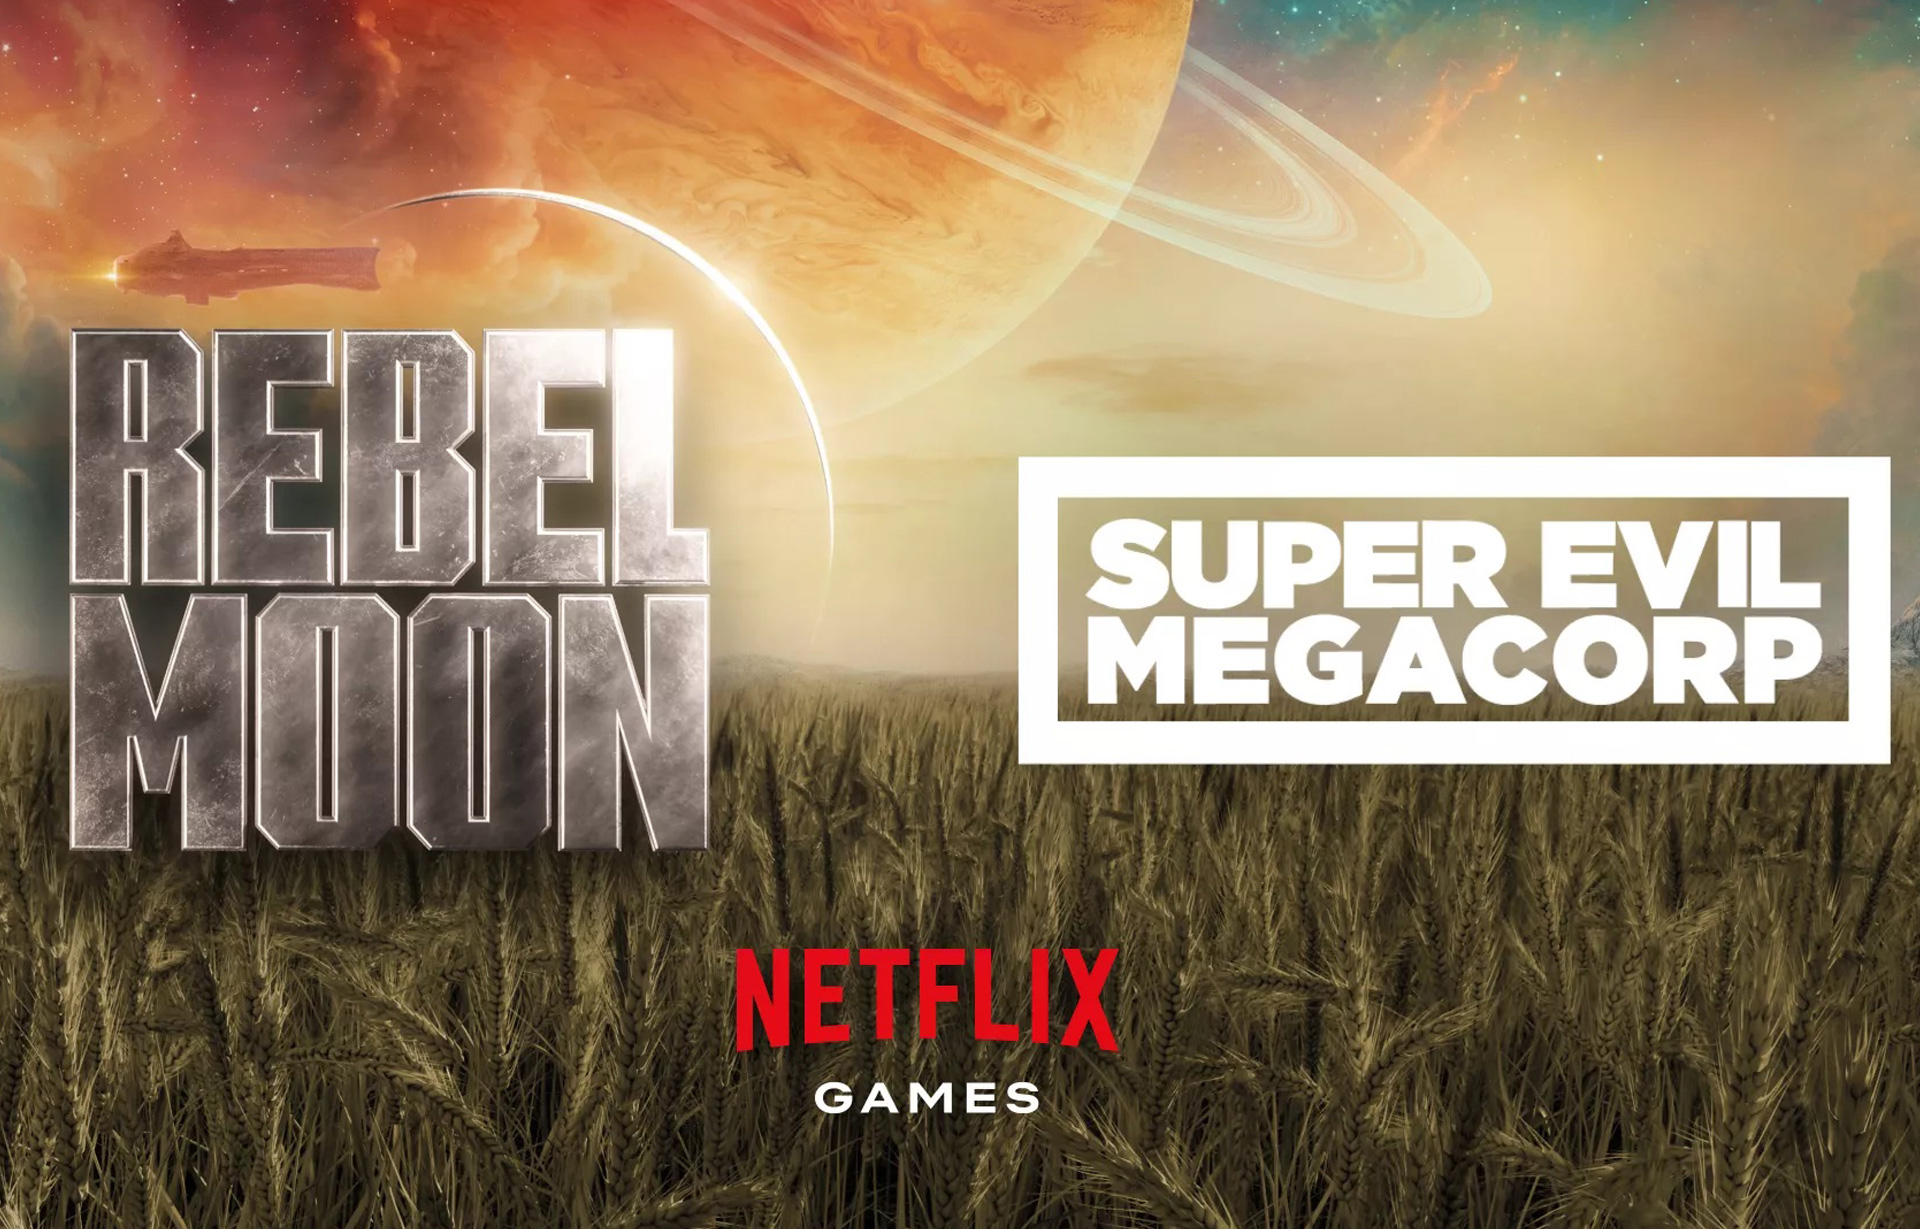 Rebel Moon: veja trailer, elenco e data de estreia do 'Star Wars da Netflix